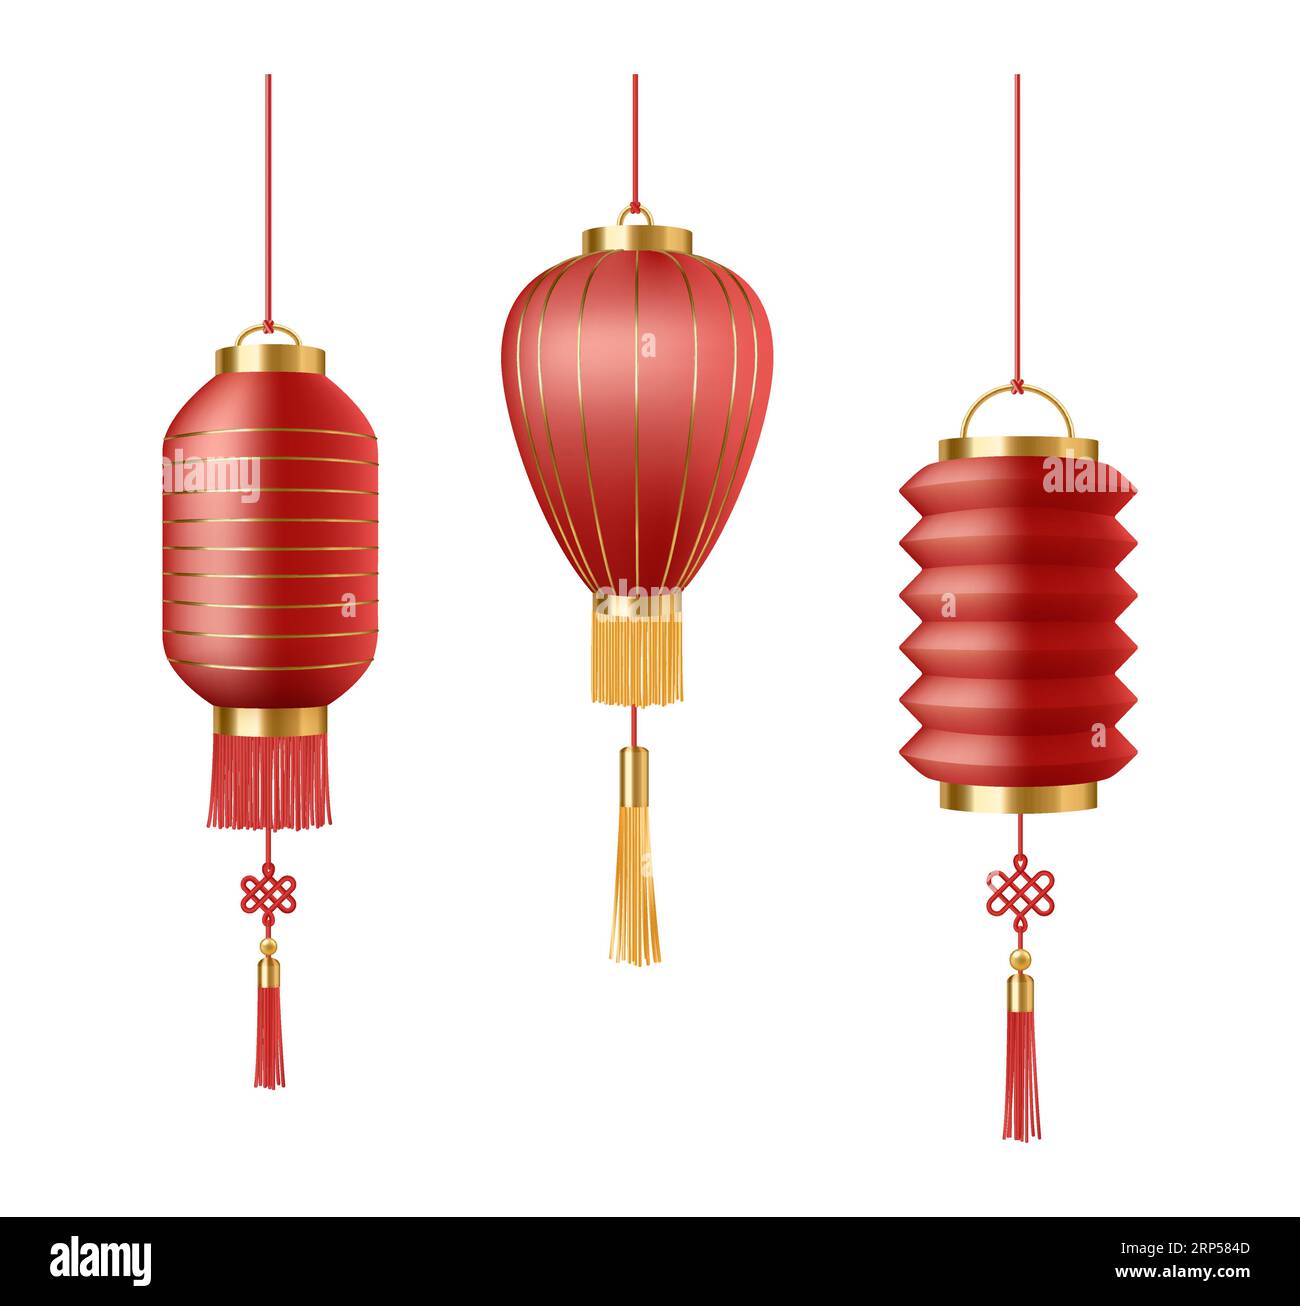 Lanterne cinesi di carta rossa. Set di decorazioni per Capodanno cinese.  Realistiche lanterne leggere di carta rossa tradizionali orientali appese a  corde con nappine su vetro Immagine e Vettoriale - Alamy